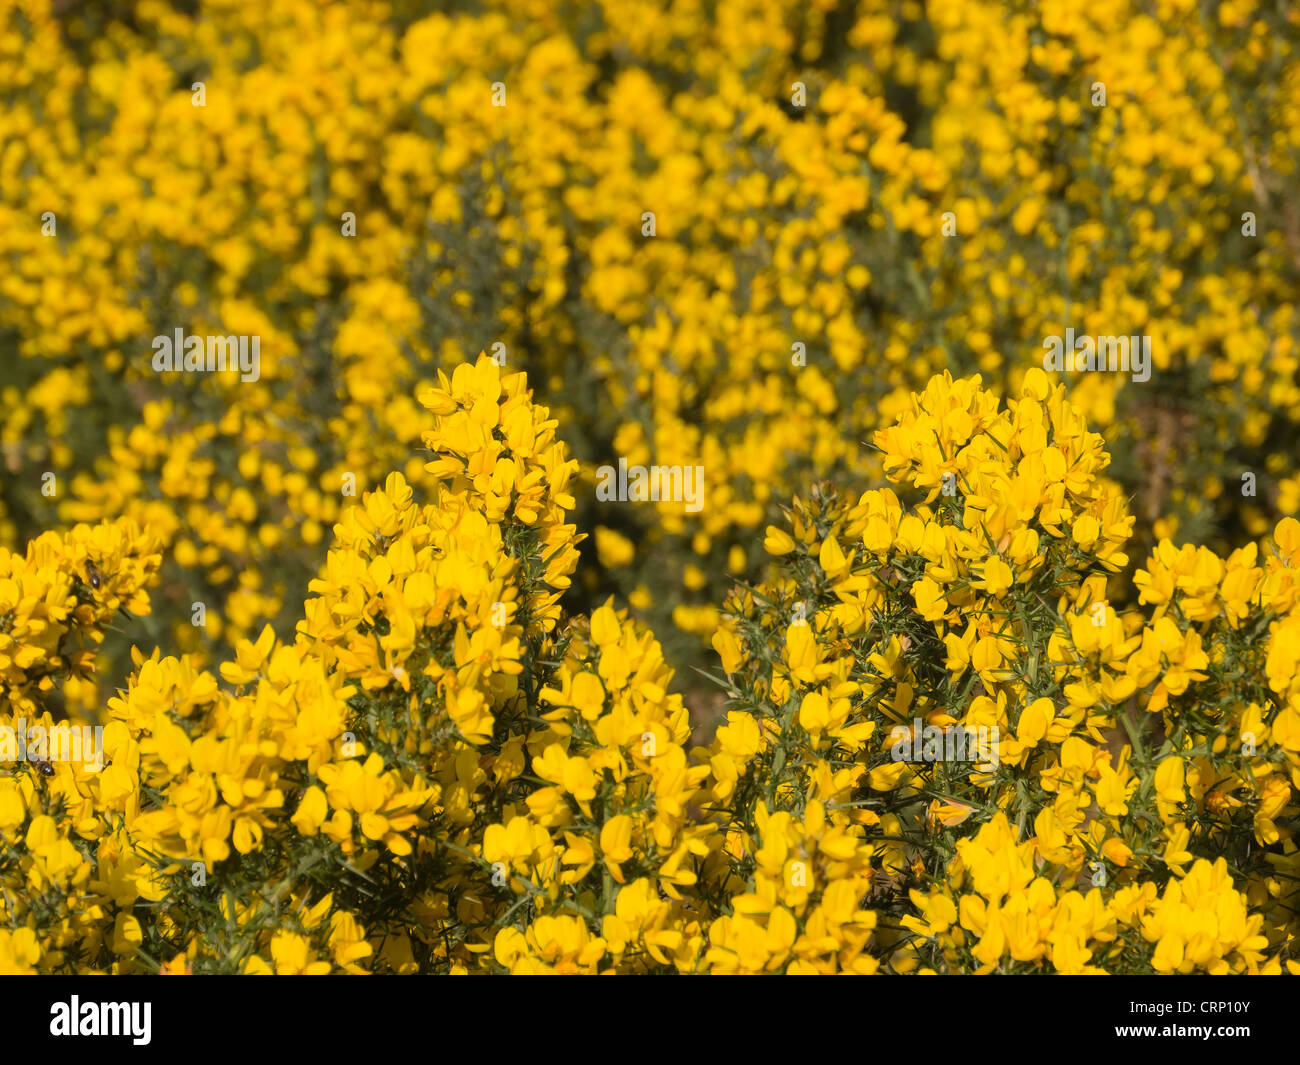 L'ajonc commun (Ulex europaeus) bush avec des fleurs jaunes, en Ecosse. Banque D'Images